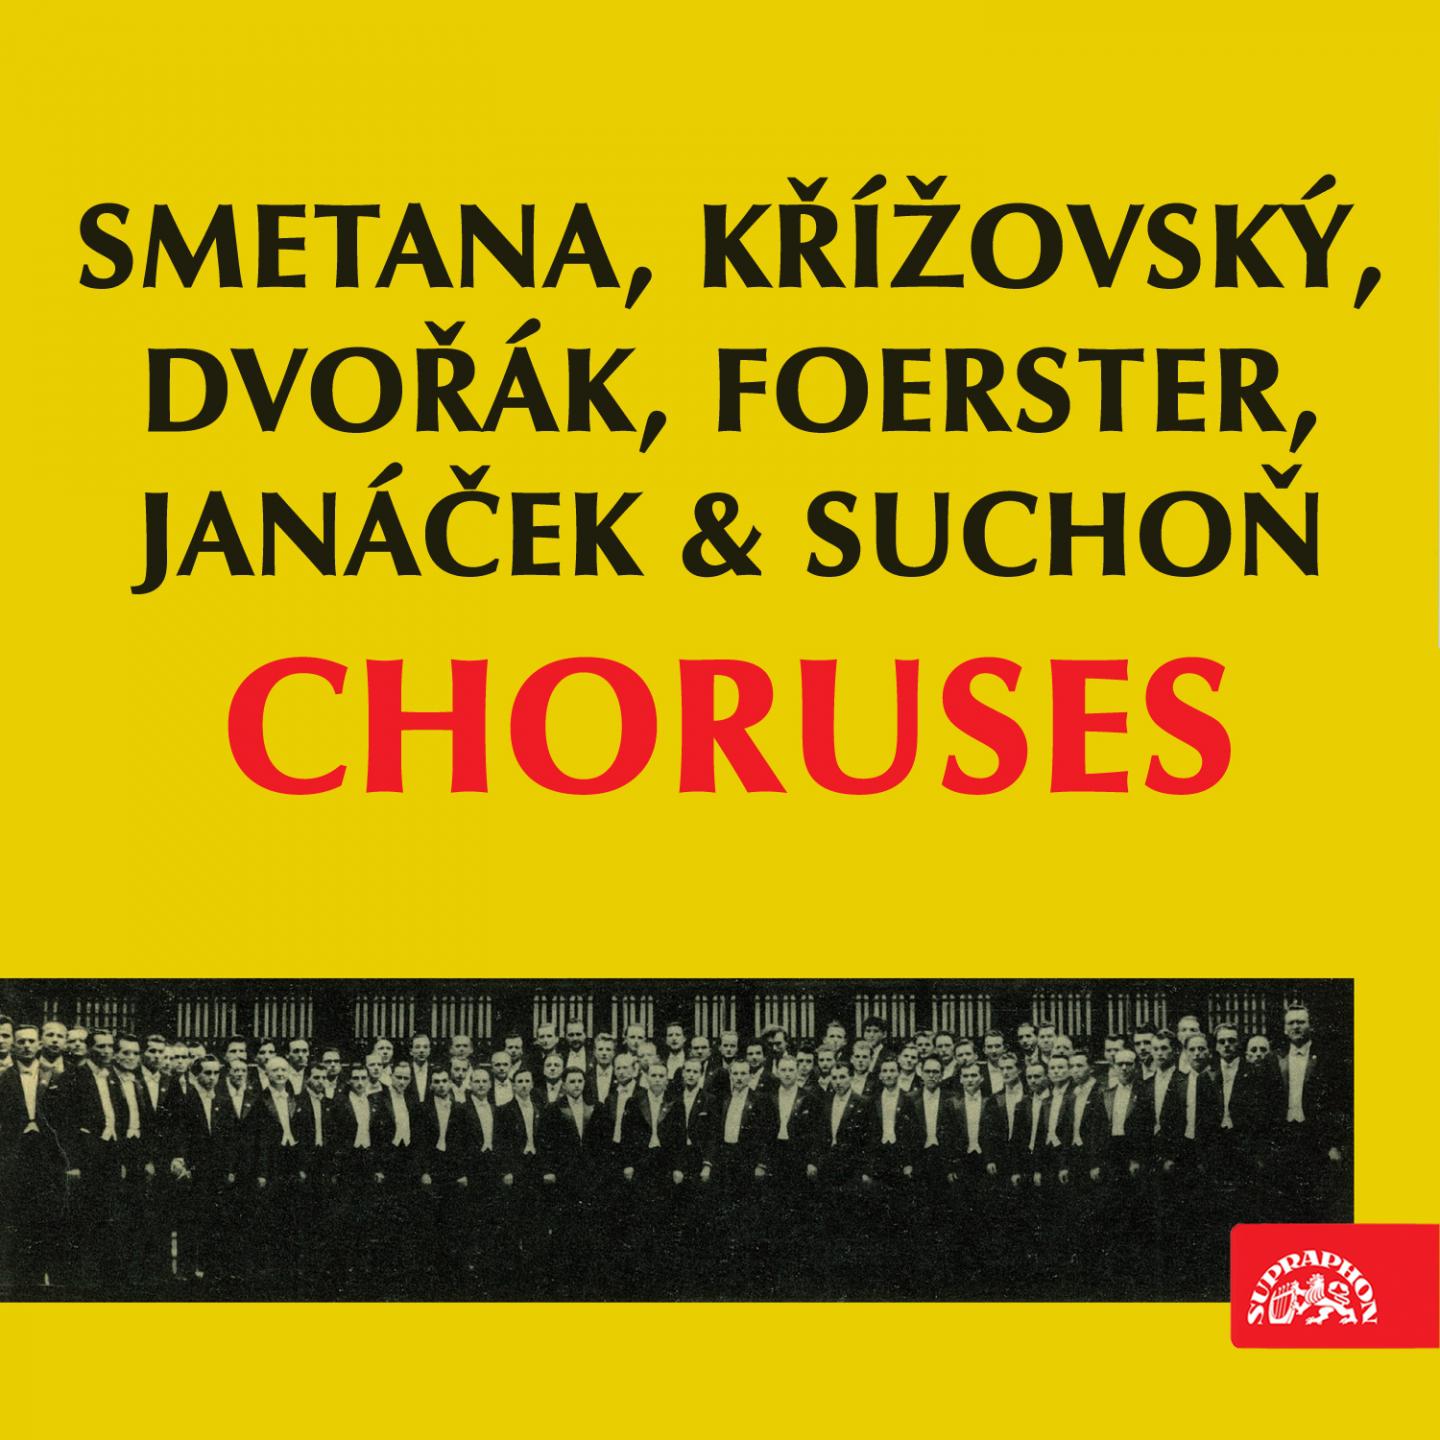 Smetana, Ki ovsk, Dvoa k, Foerster, Jana ek and Sucho: Choruses